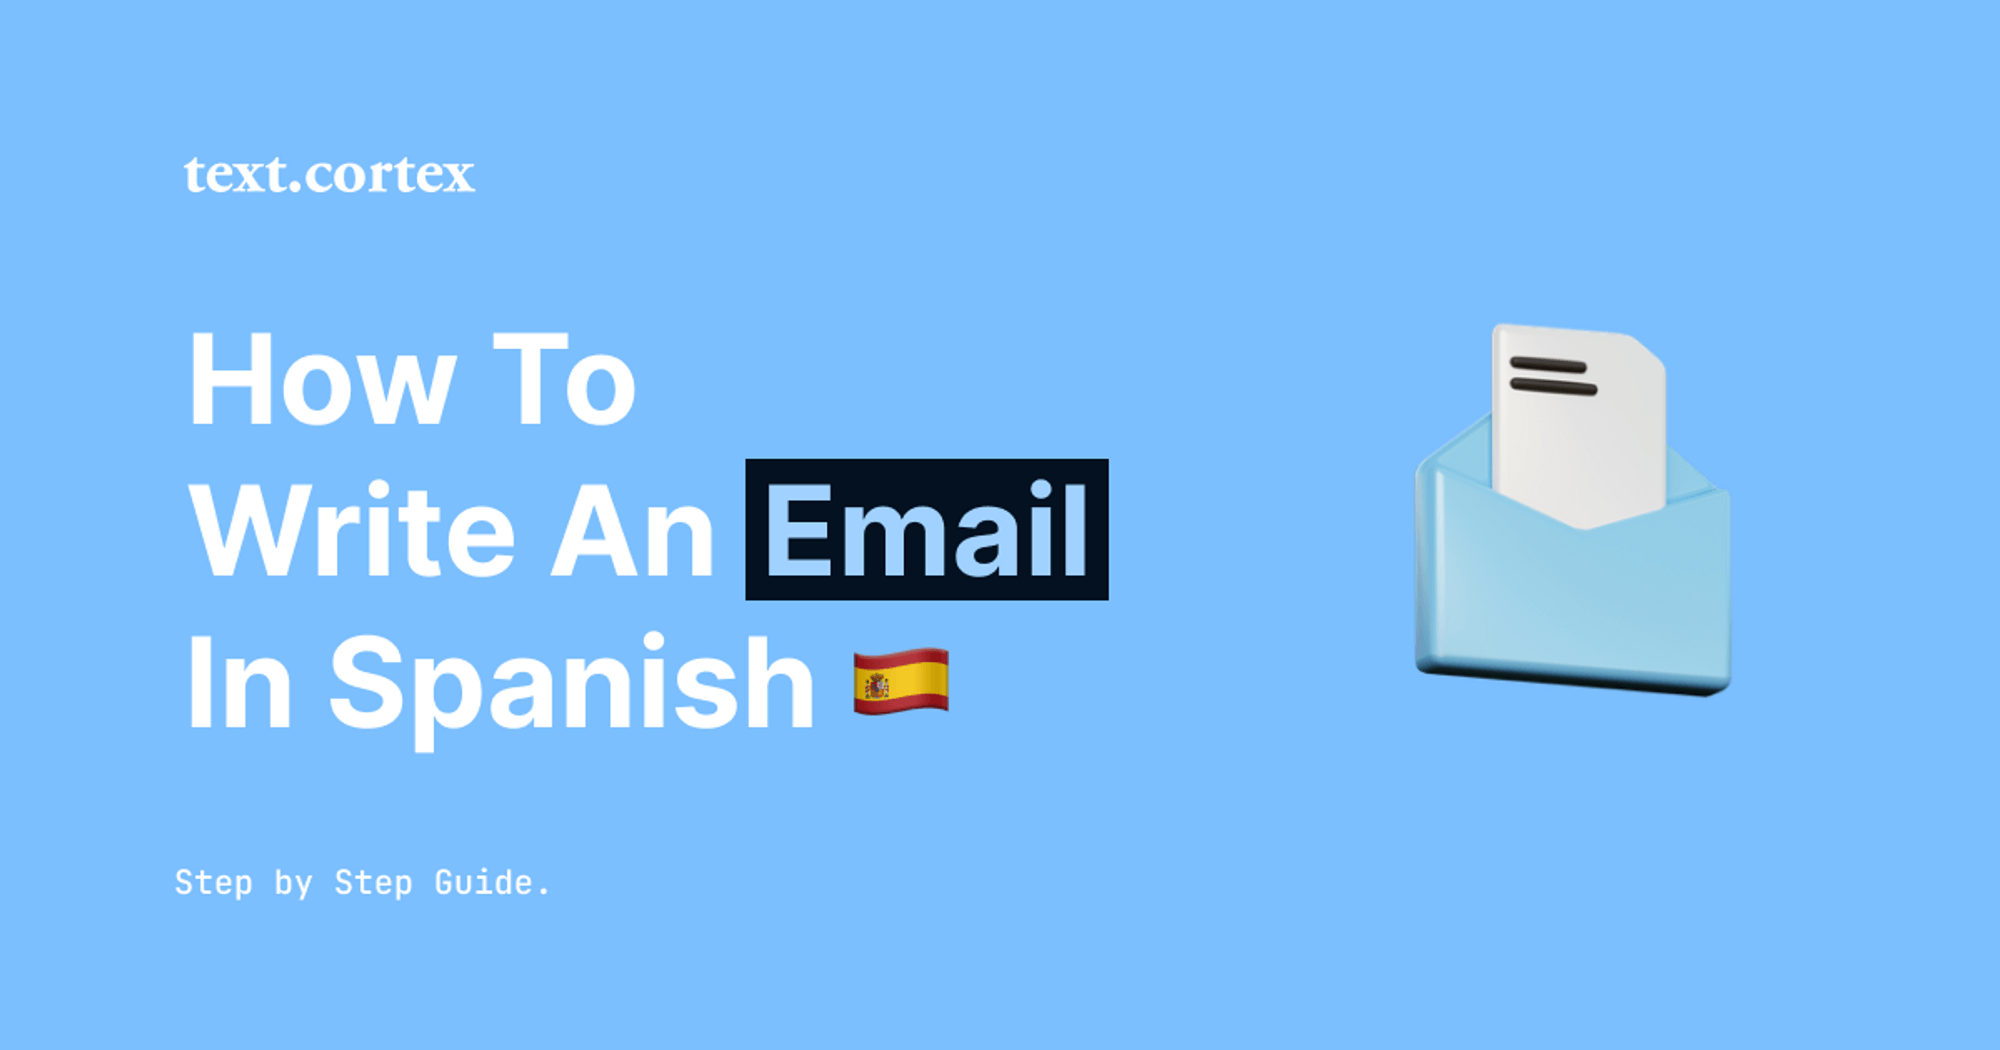 Hur man skriver ett e-postmeddelande på spanska - steg-för-steg-guide